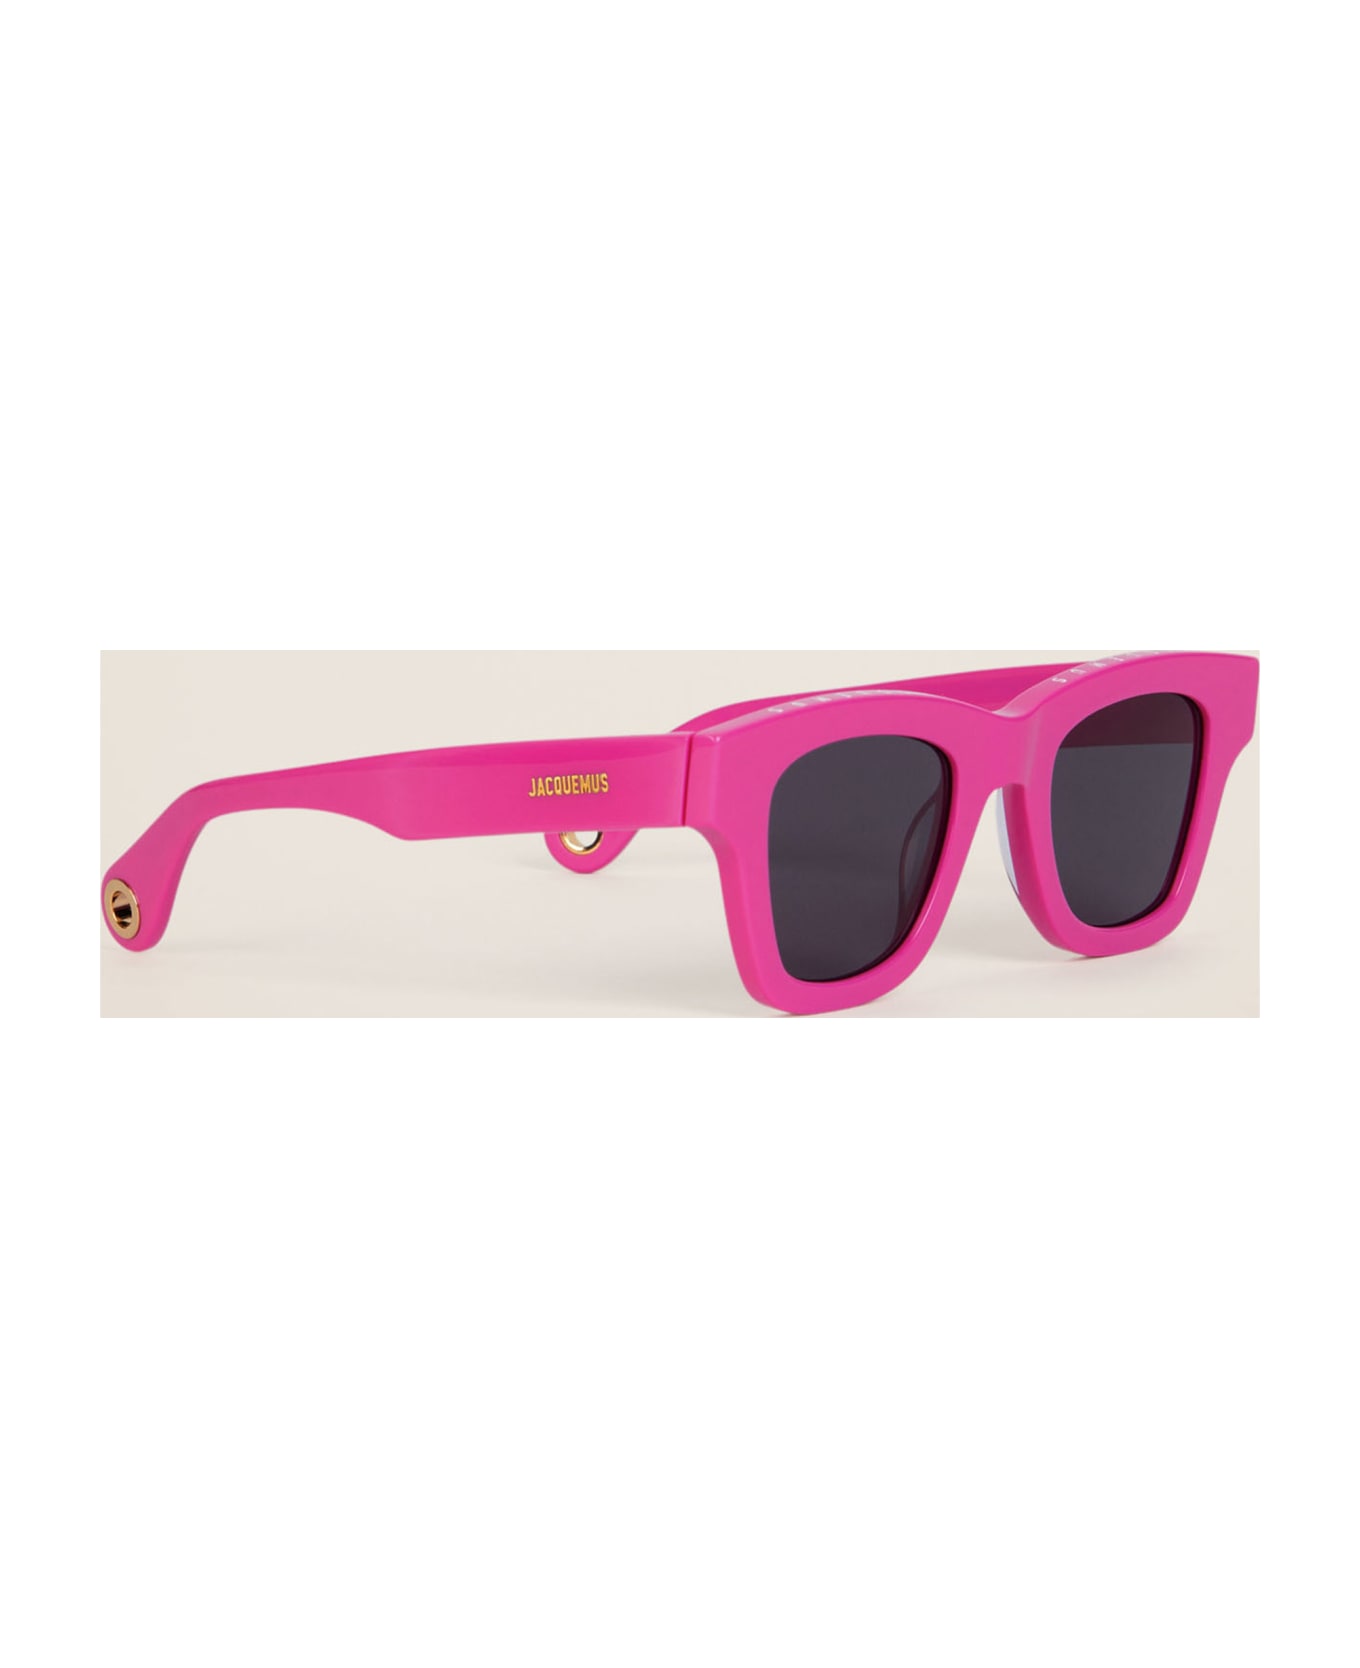 Jacquemus Les Lunettes Nocio - Pink Sunglasses - pink